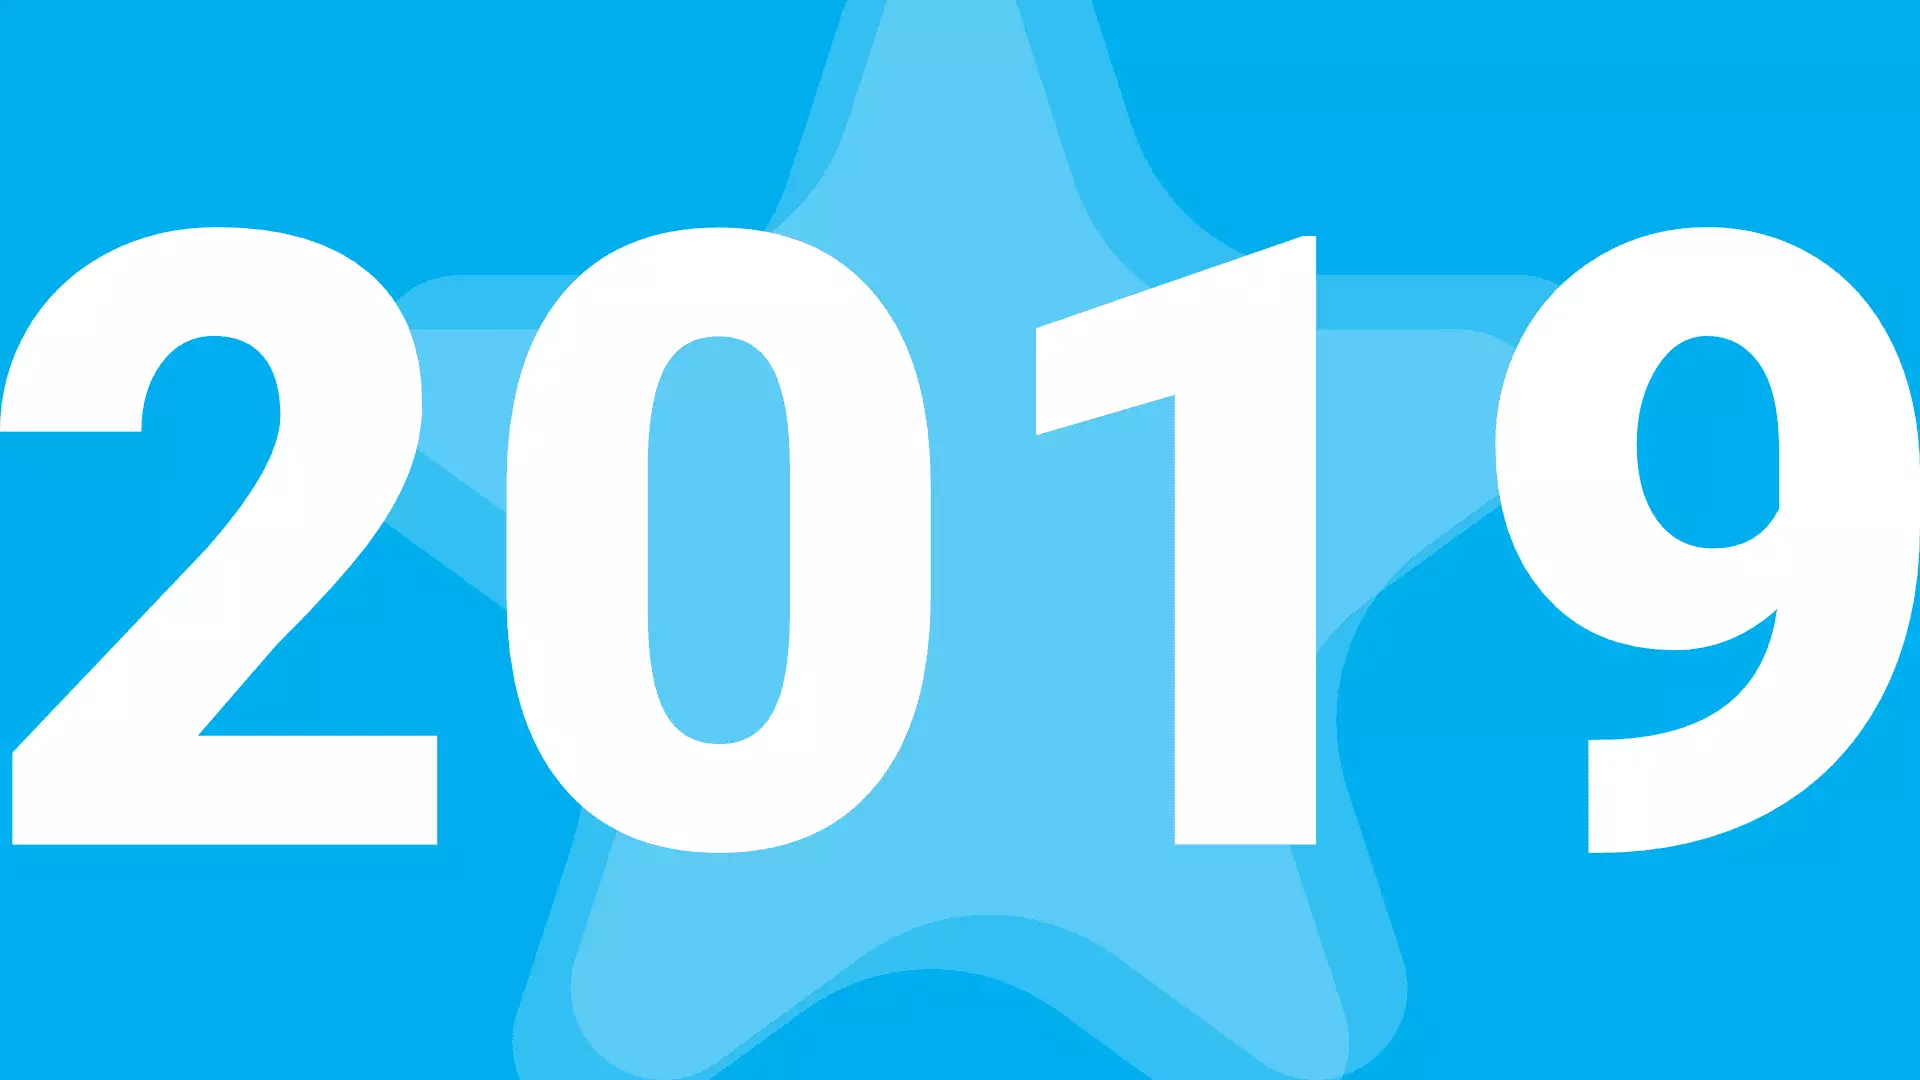 starfish wordpress plugin 2019 year review